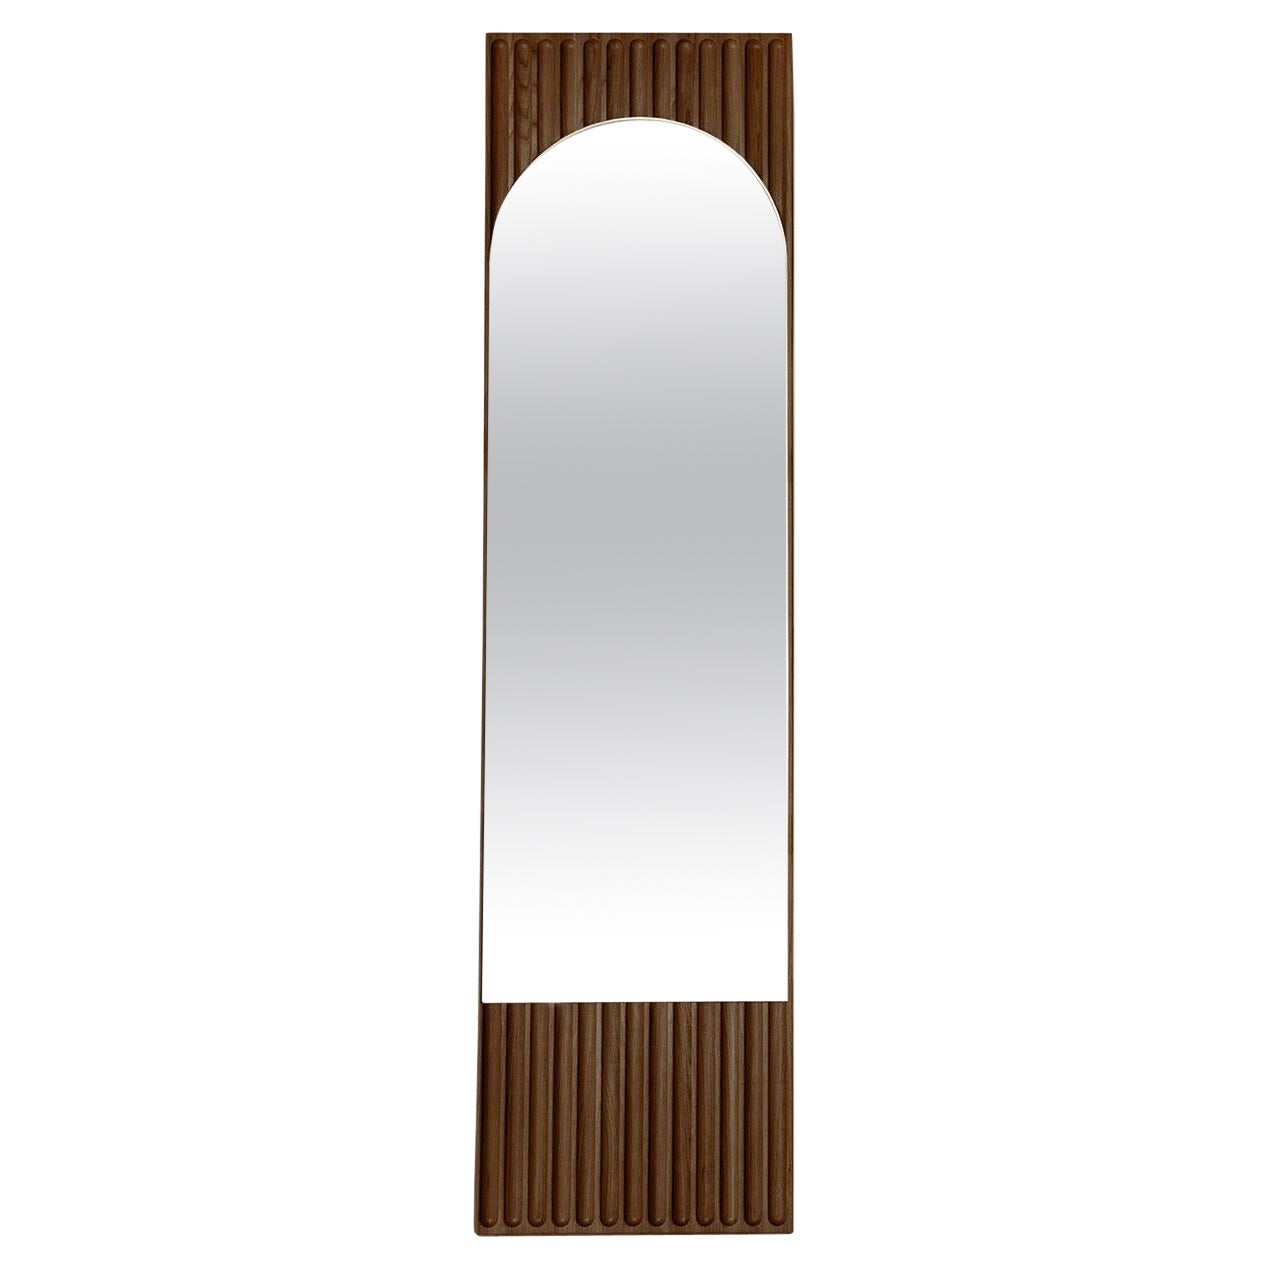 Miroir rectangulaire Tutto Sesto en bois massif, finition frêne marron, contemporain